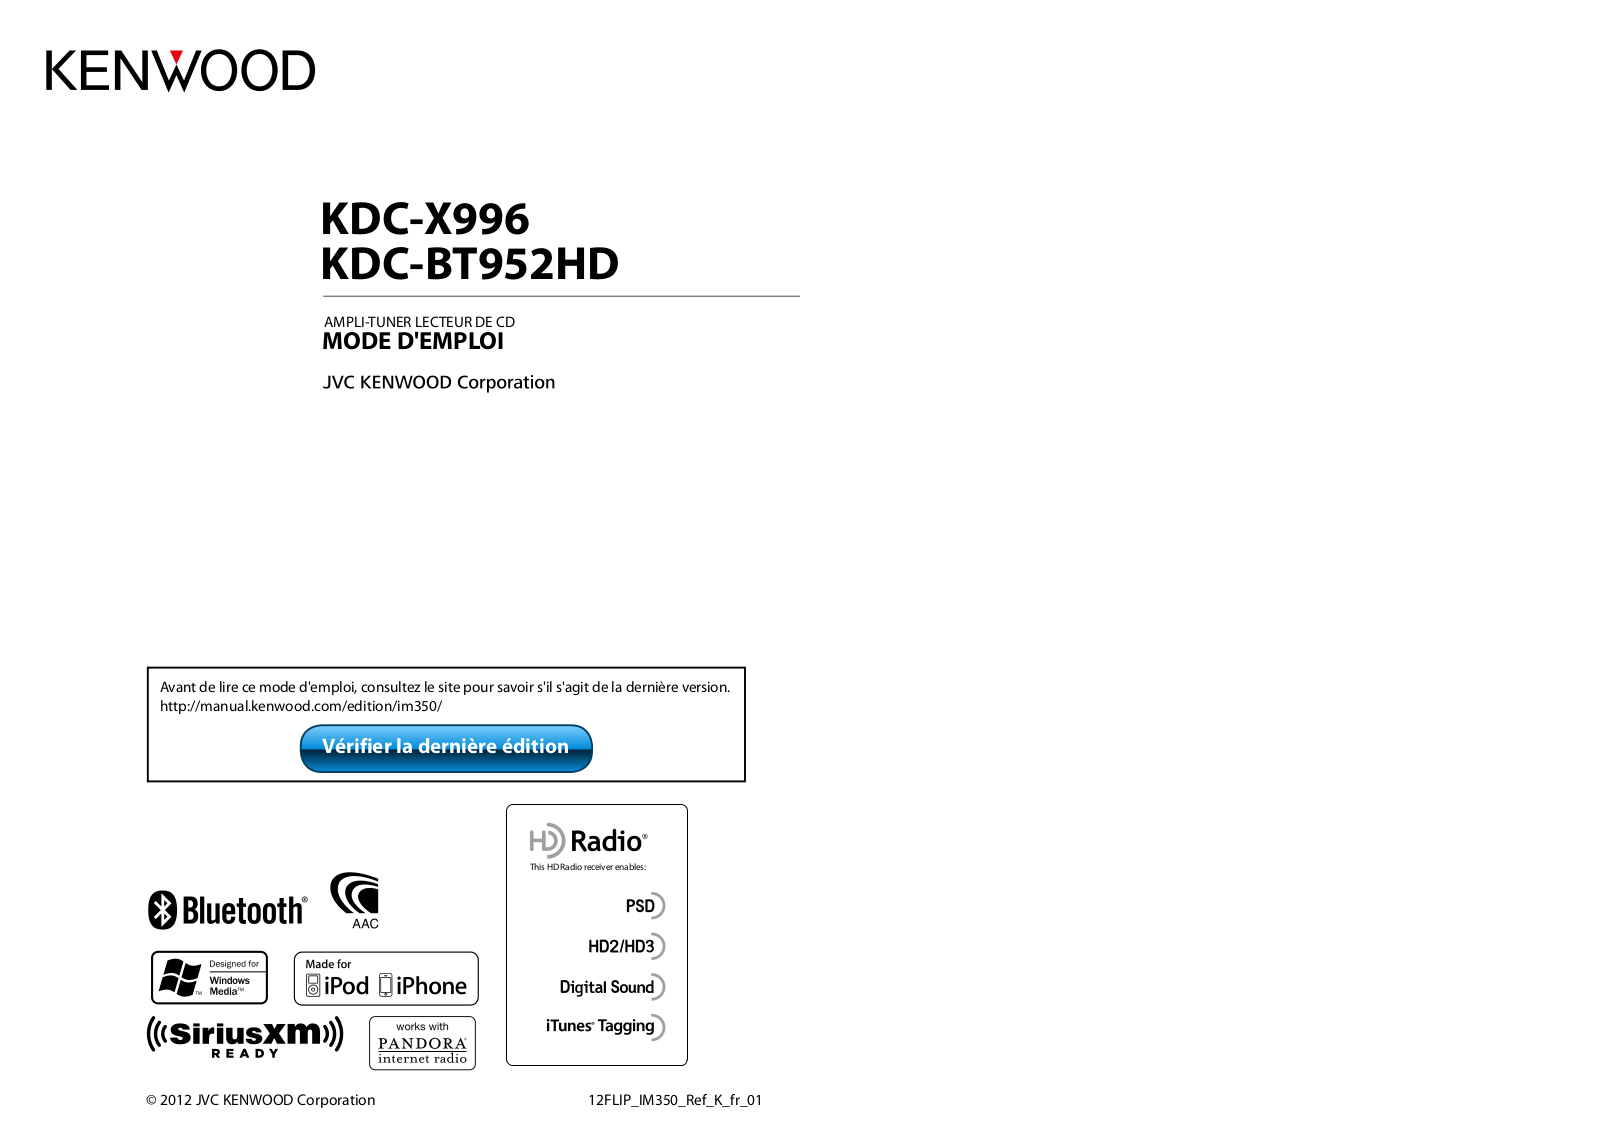 Kenwood KDC-BT952HD, KDC-X996 Manual